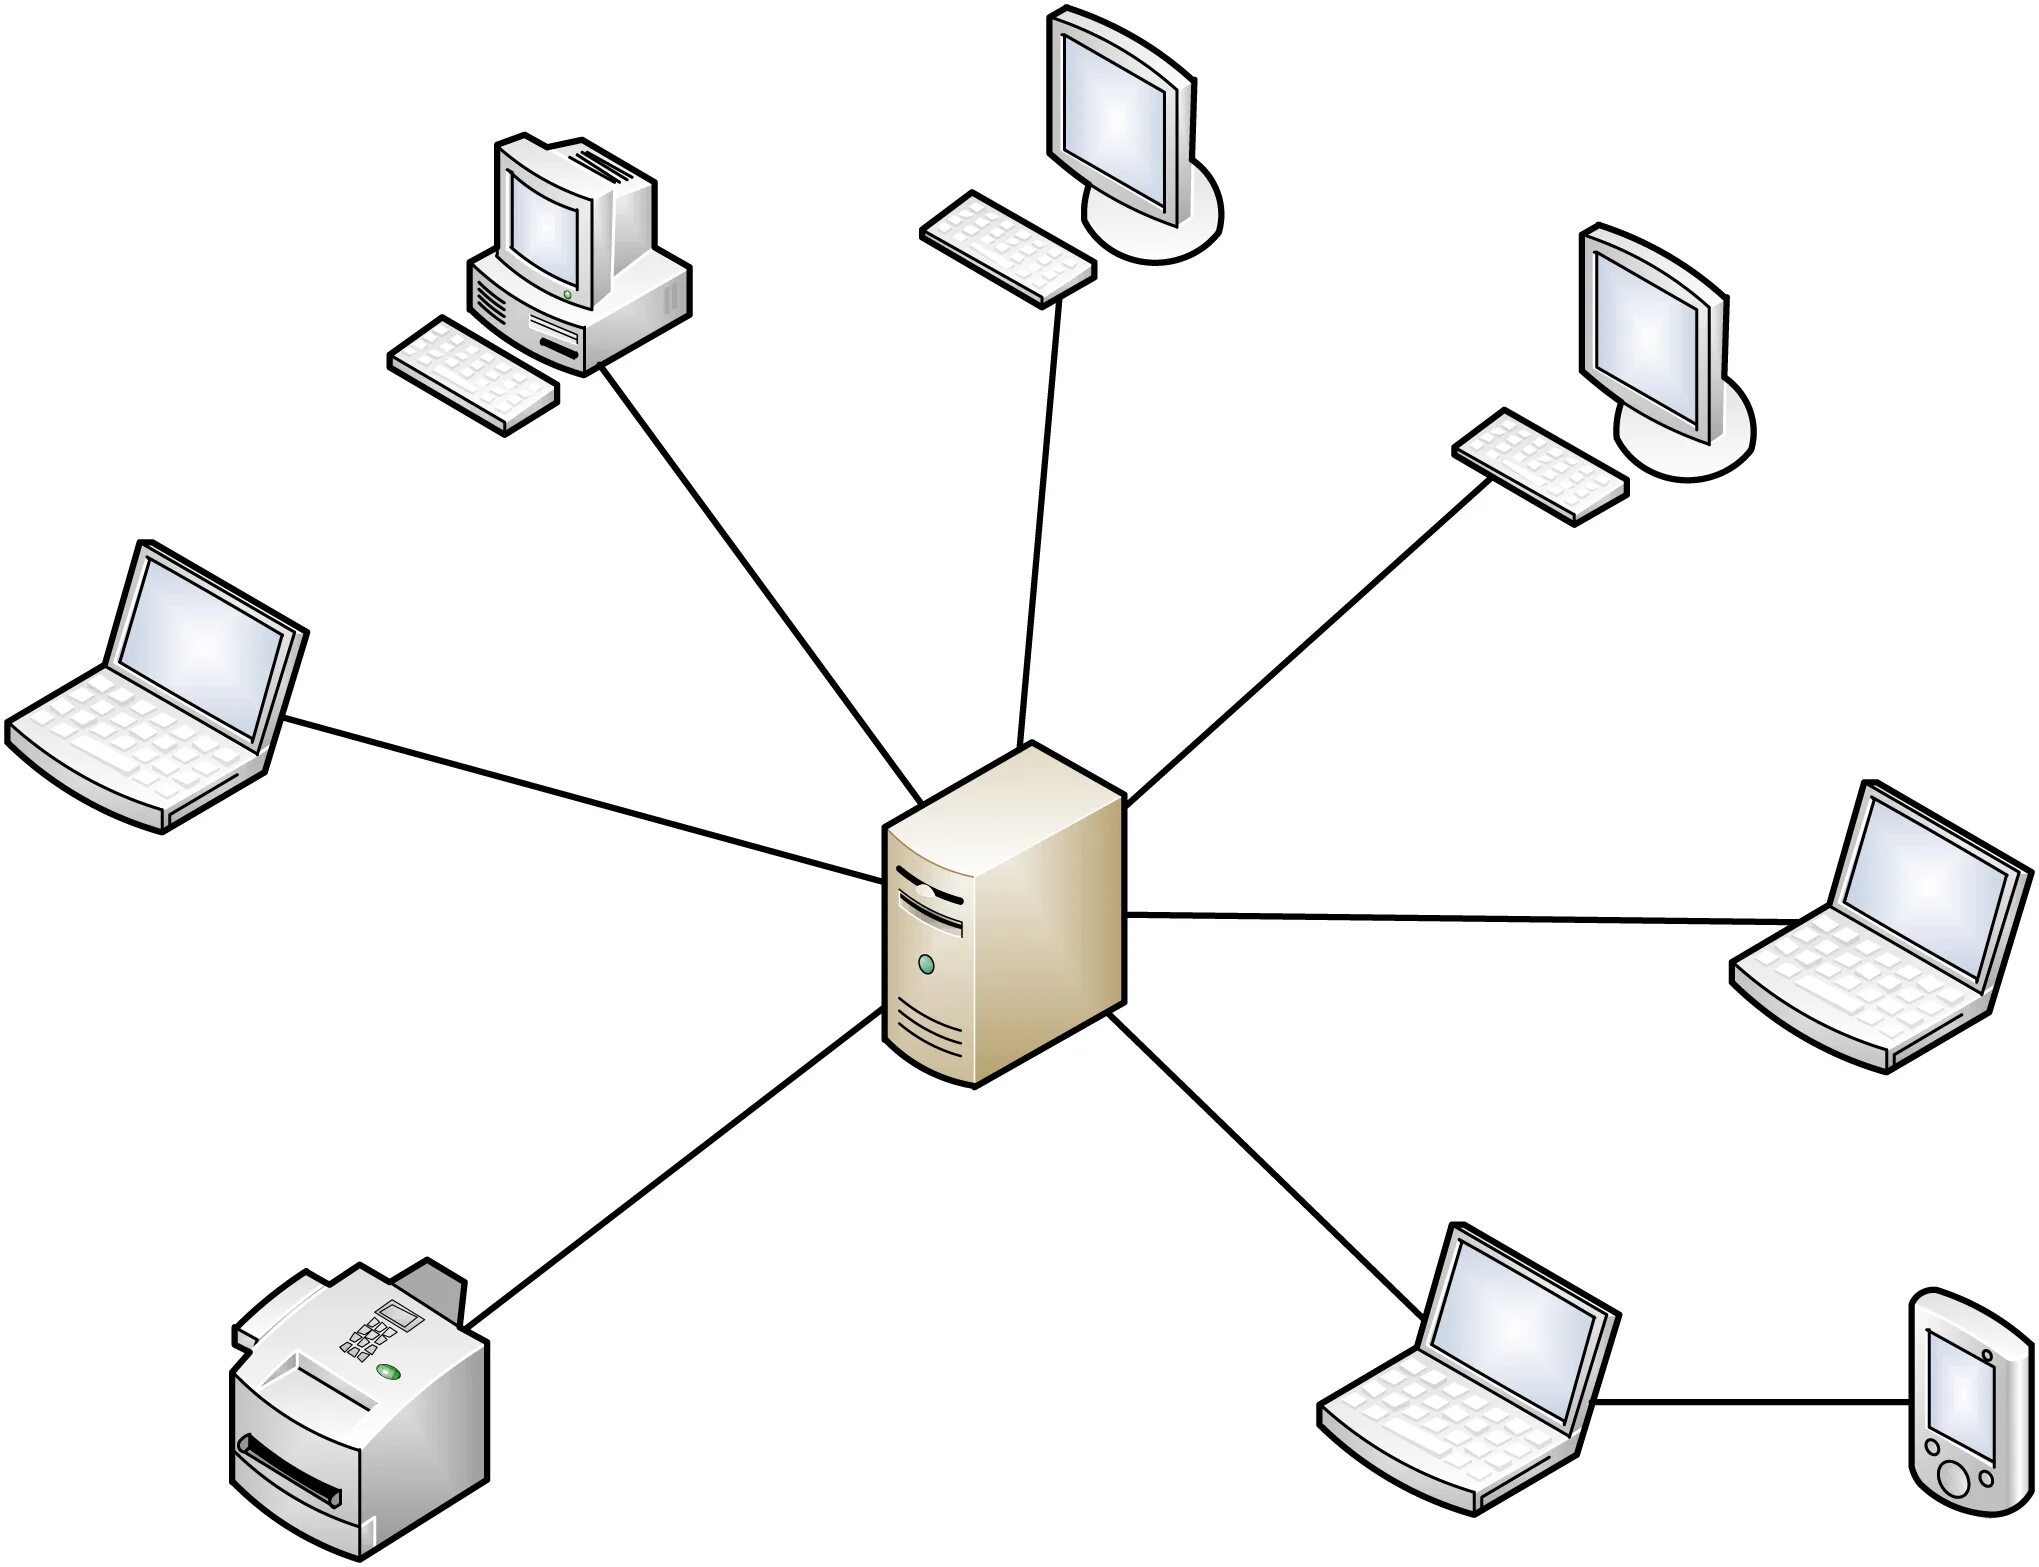 Локальных вычислительных сетей компьютерная сеть. Локальная сеть ЛВС. Локальная вычислительная сеть (ЛВС). Локальная сеть с выделенным сервером. Сеть с выделенным сервером схема.